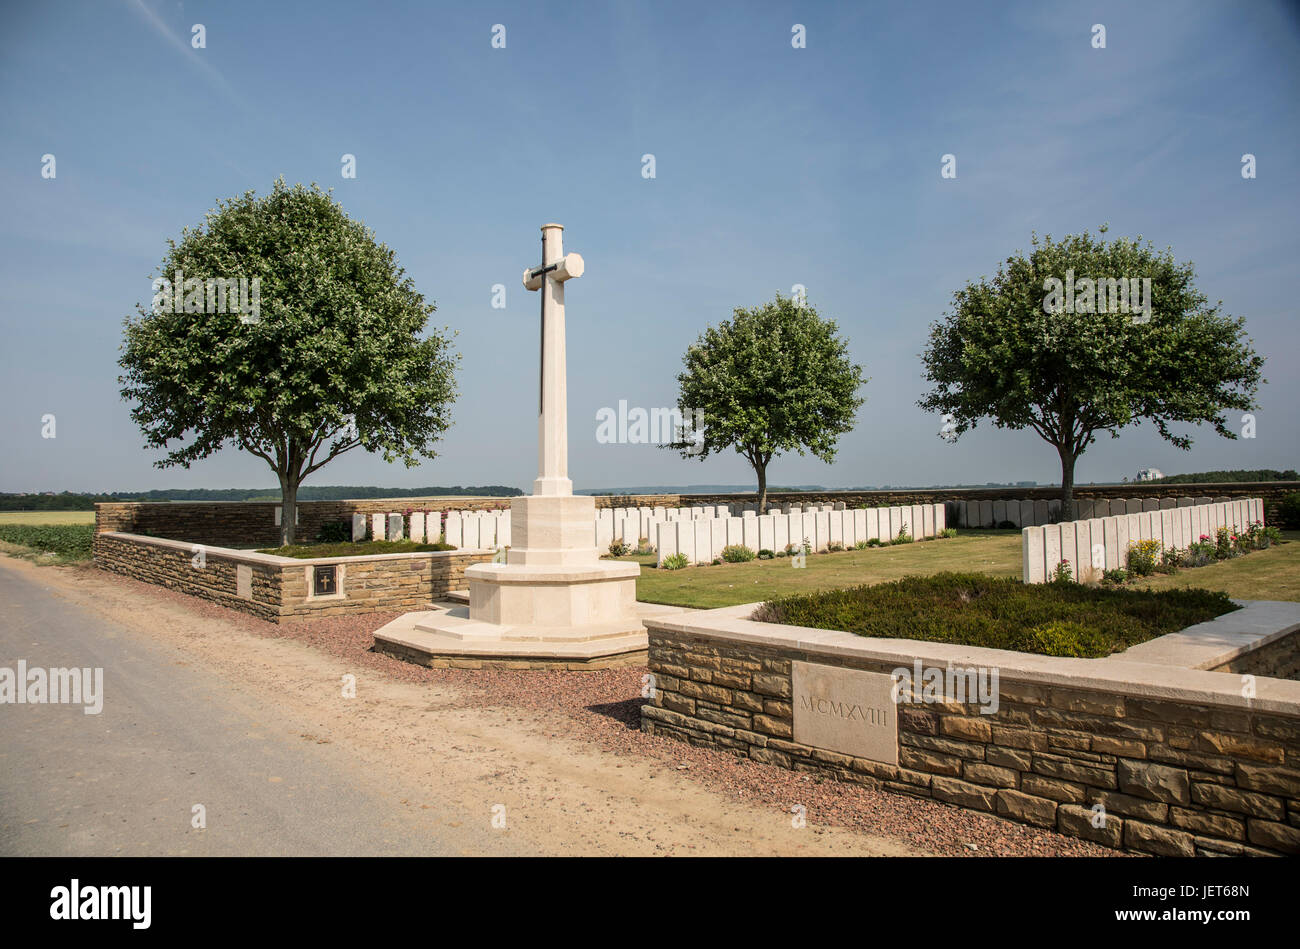 Masnieres britische CWGC Friedhof des ersten Weltkriegs in der Nähe von Cambrai Stockfoto